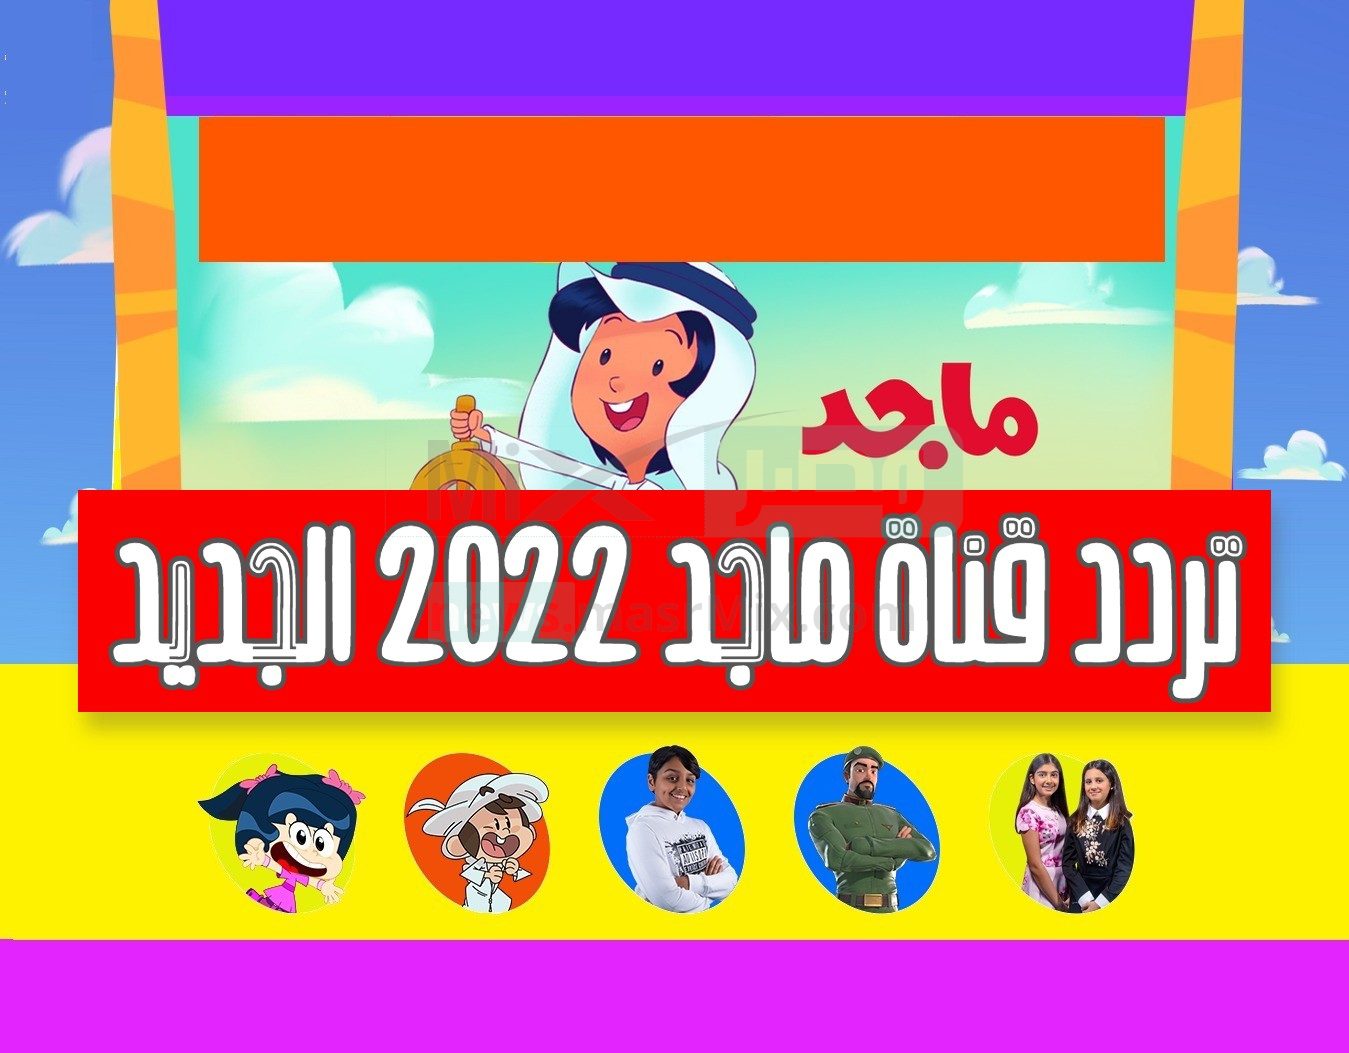 تردد قناة ماجد نايل سات الجديد 2022 .. والبرامج التي تبثها القناة